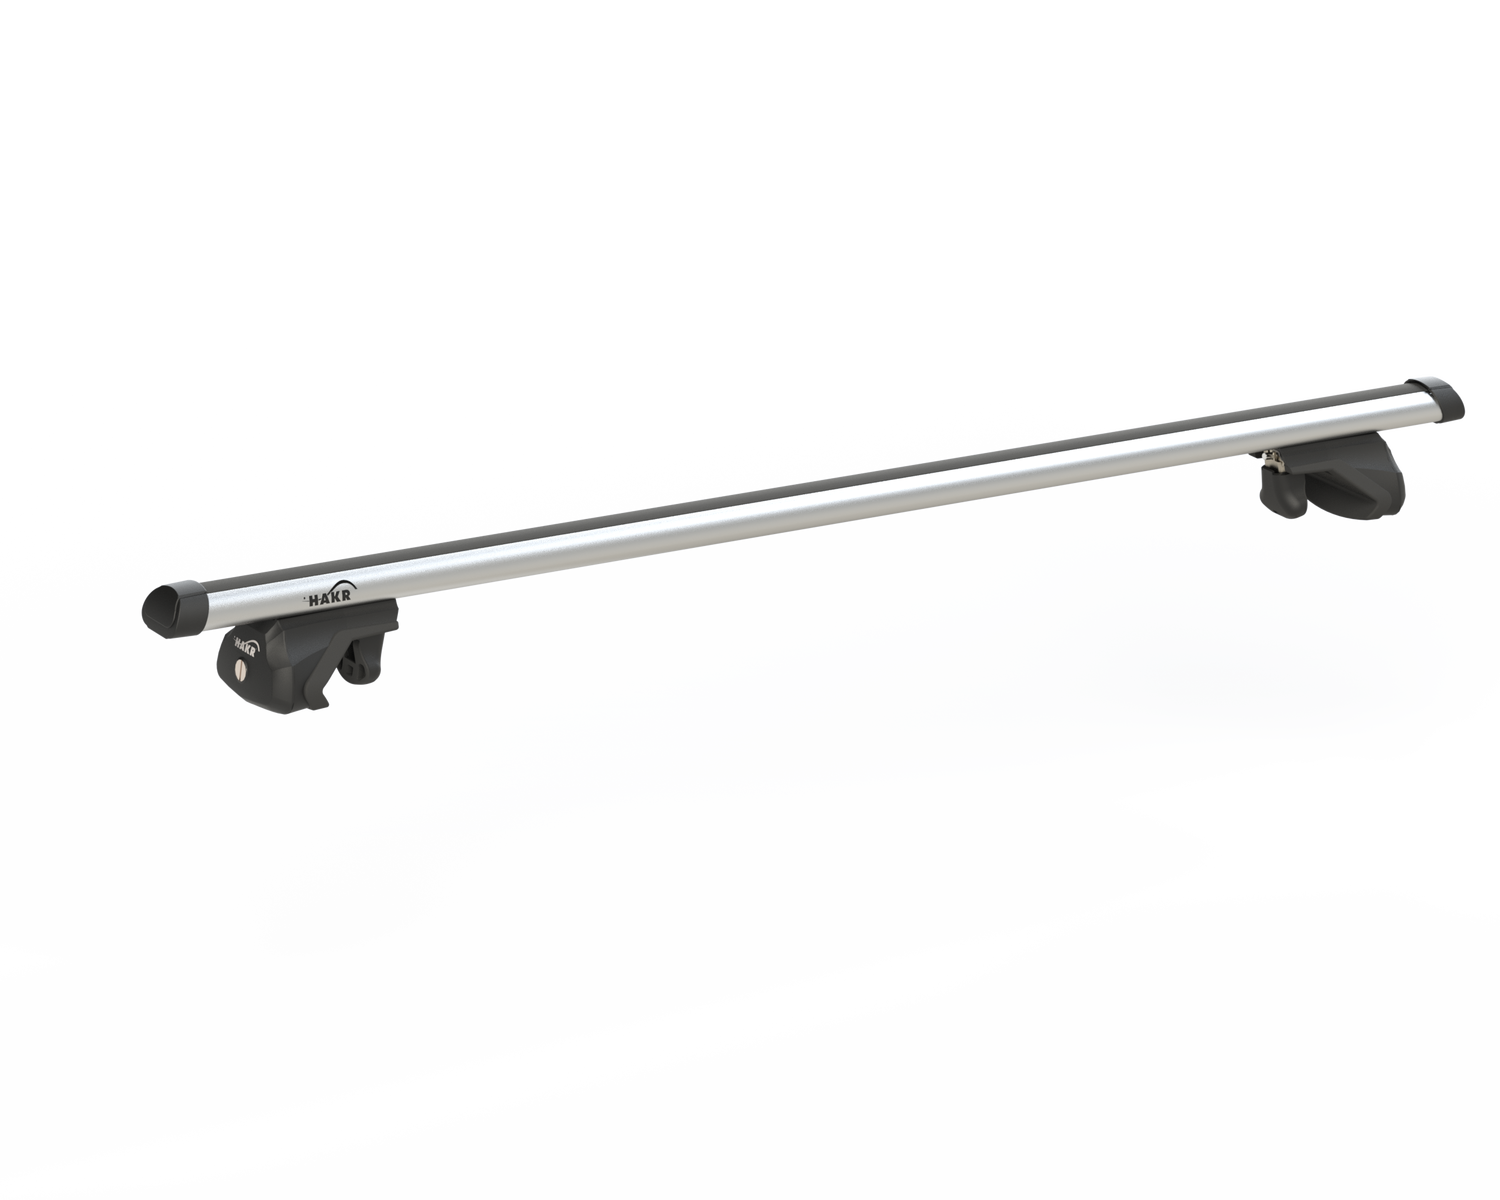 Střešní nosič OPEL INSIGNIA 5dv combi s integrovanými podélníky, Alu tyč